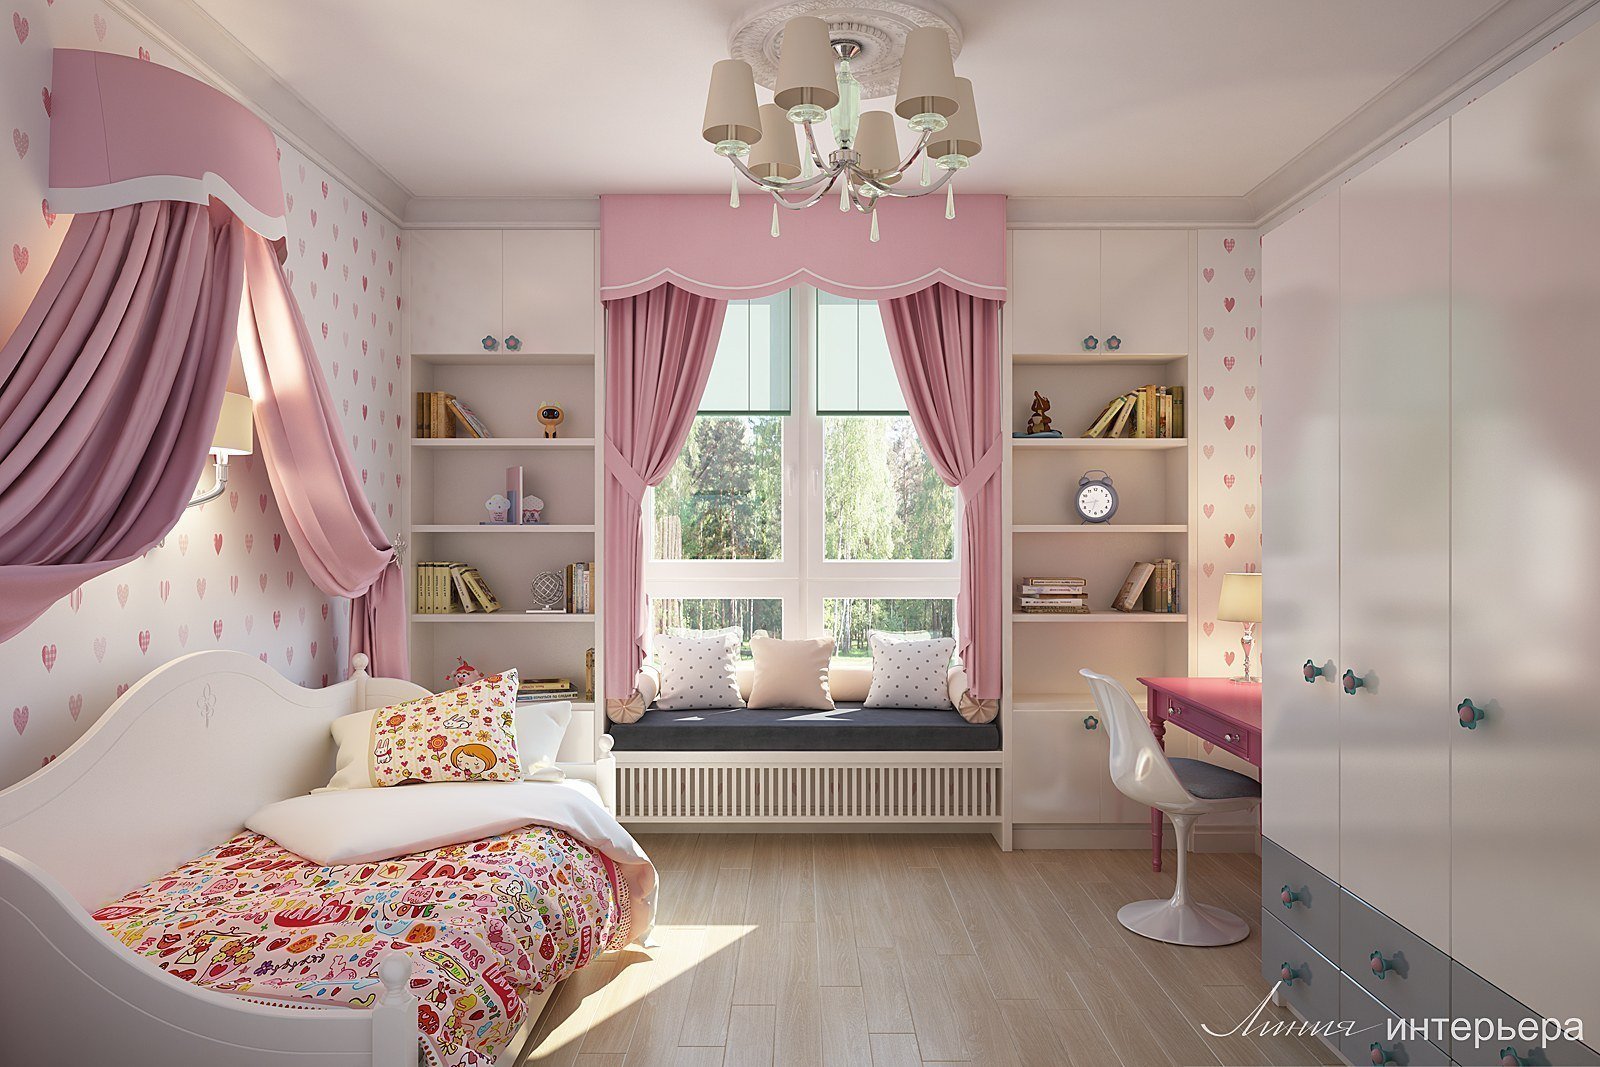 Дизайн детской комнаты для девочки - 95 фото интерьеров после ремонта, красивые идеи